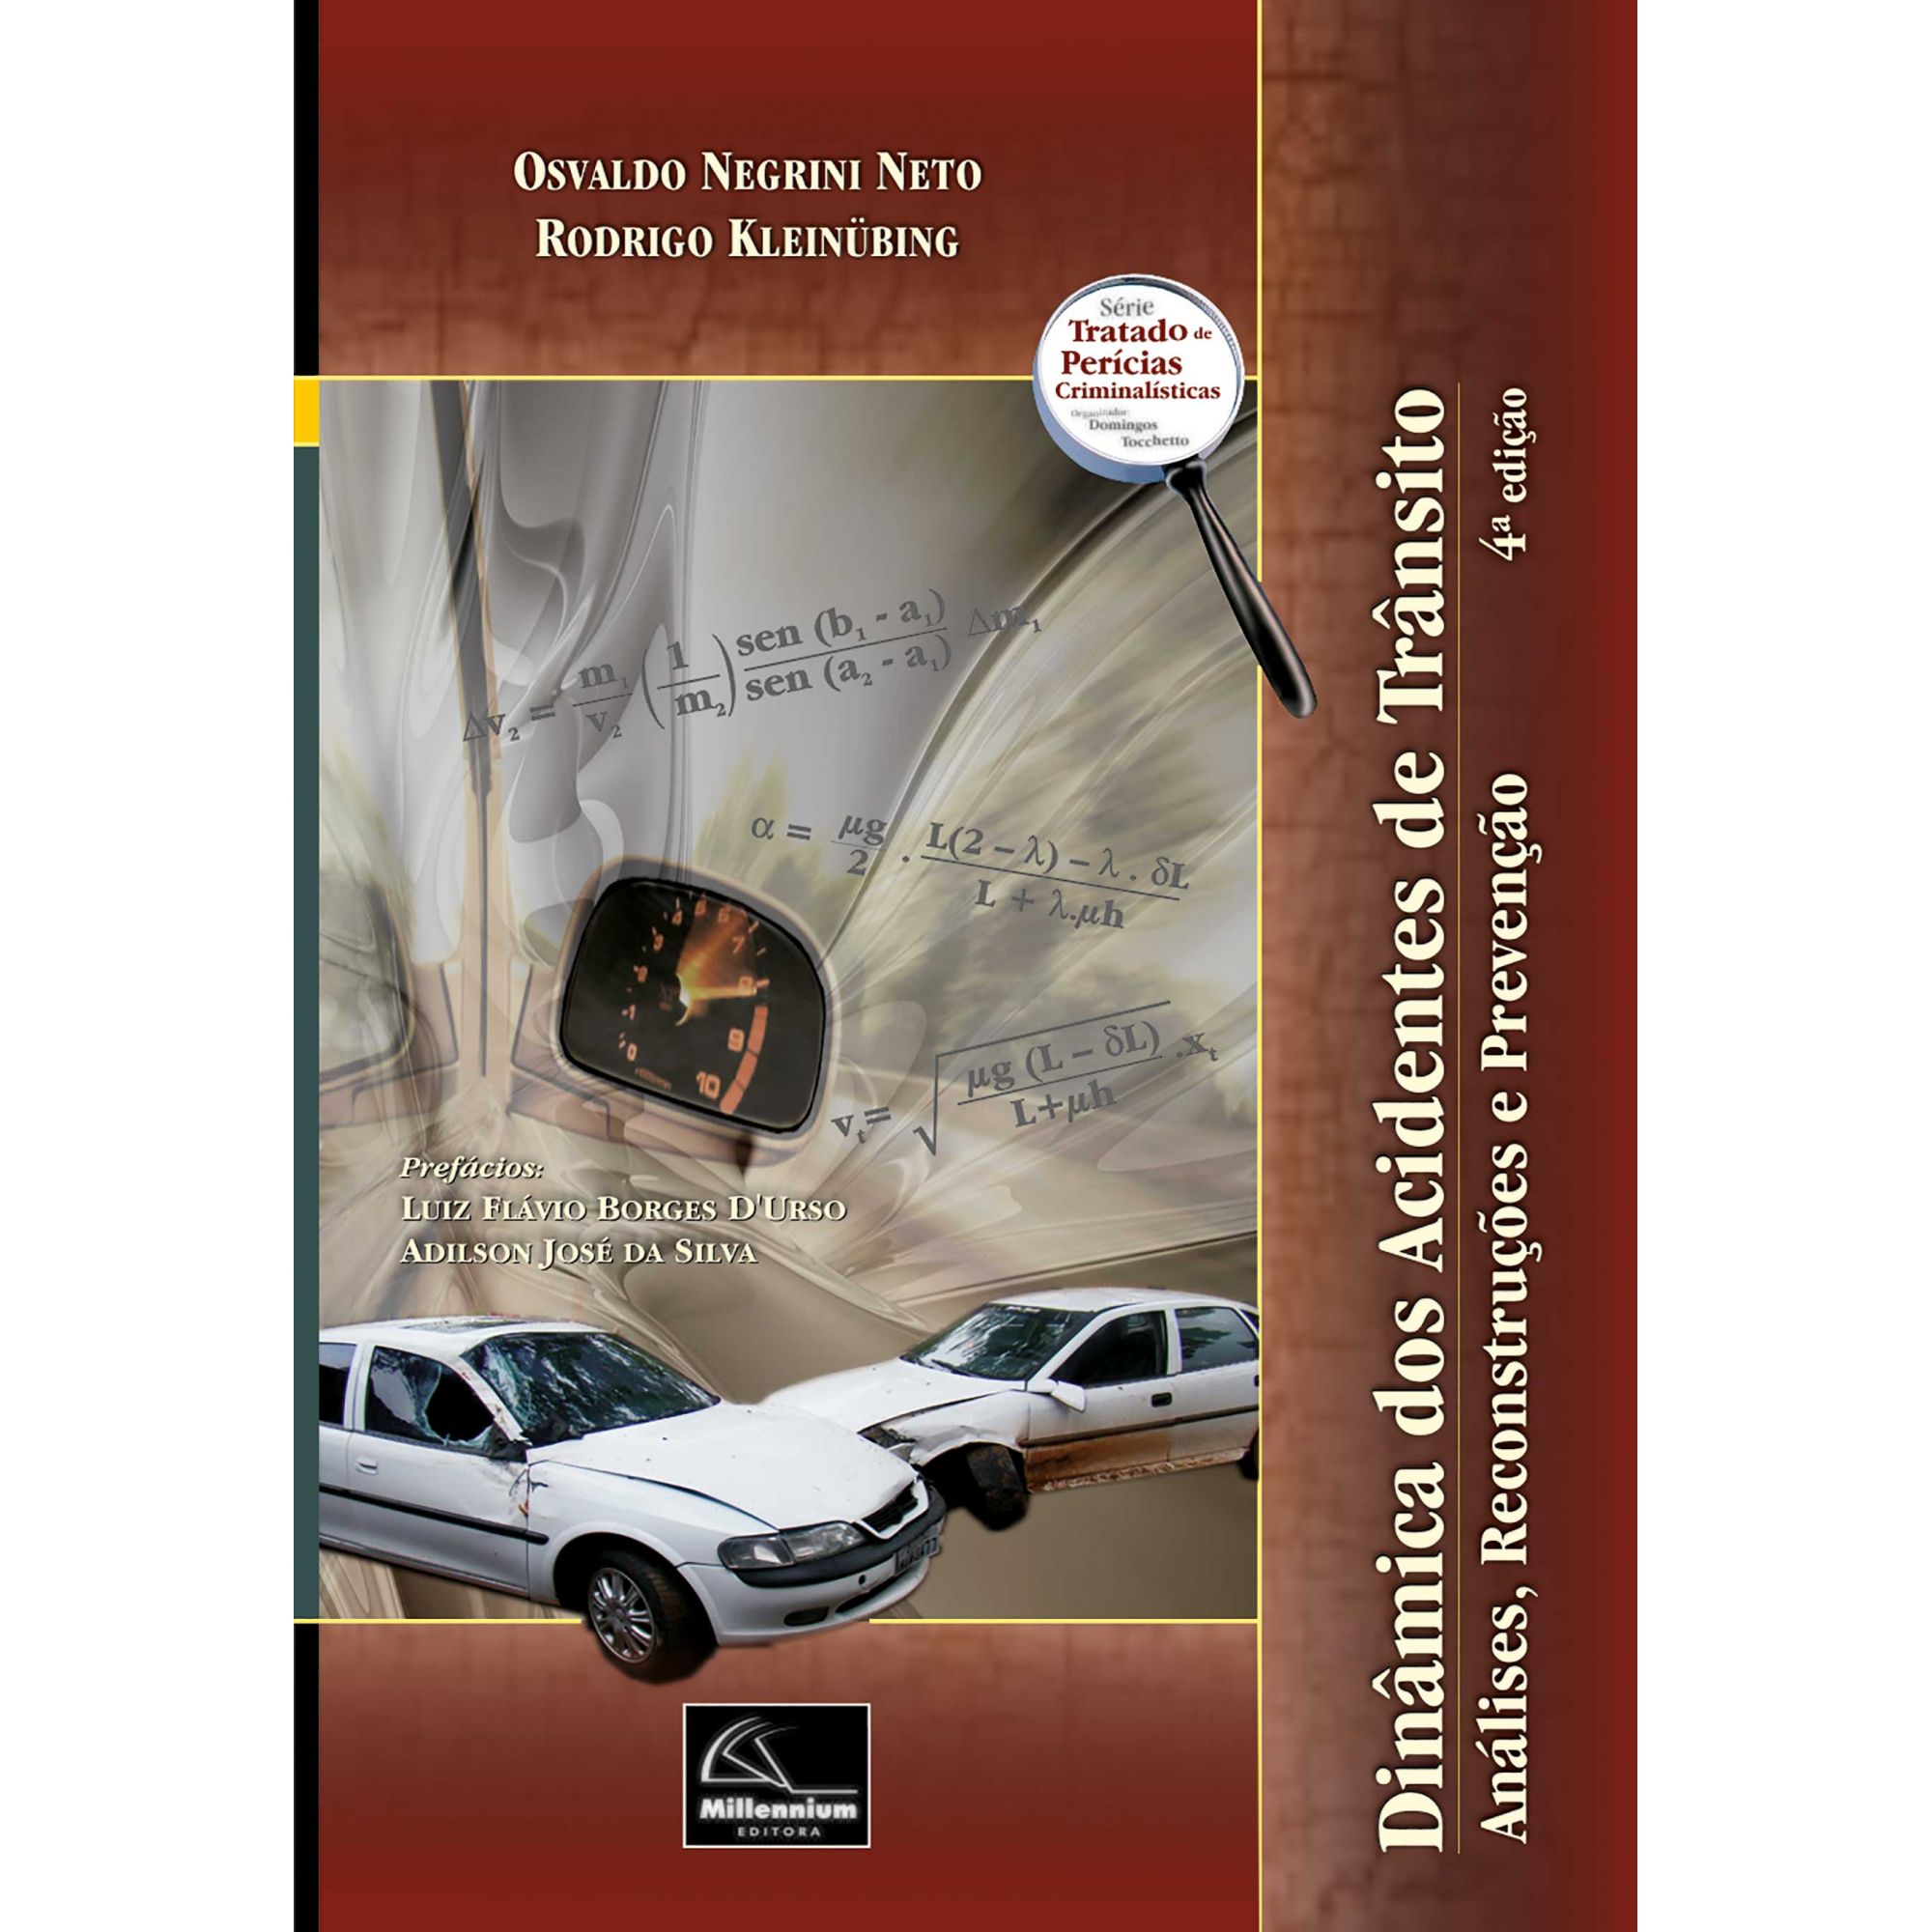 Dinâmica dos Acidentes de Trânsito - Análises, Reconstruções e Prevenção 4ª edição  - Millennium Editora - Livros de Perícia